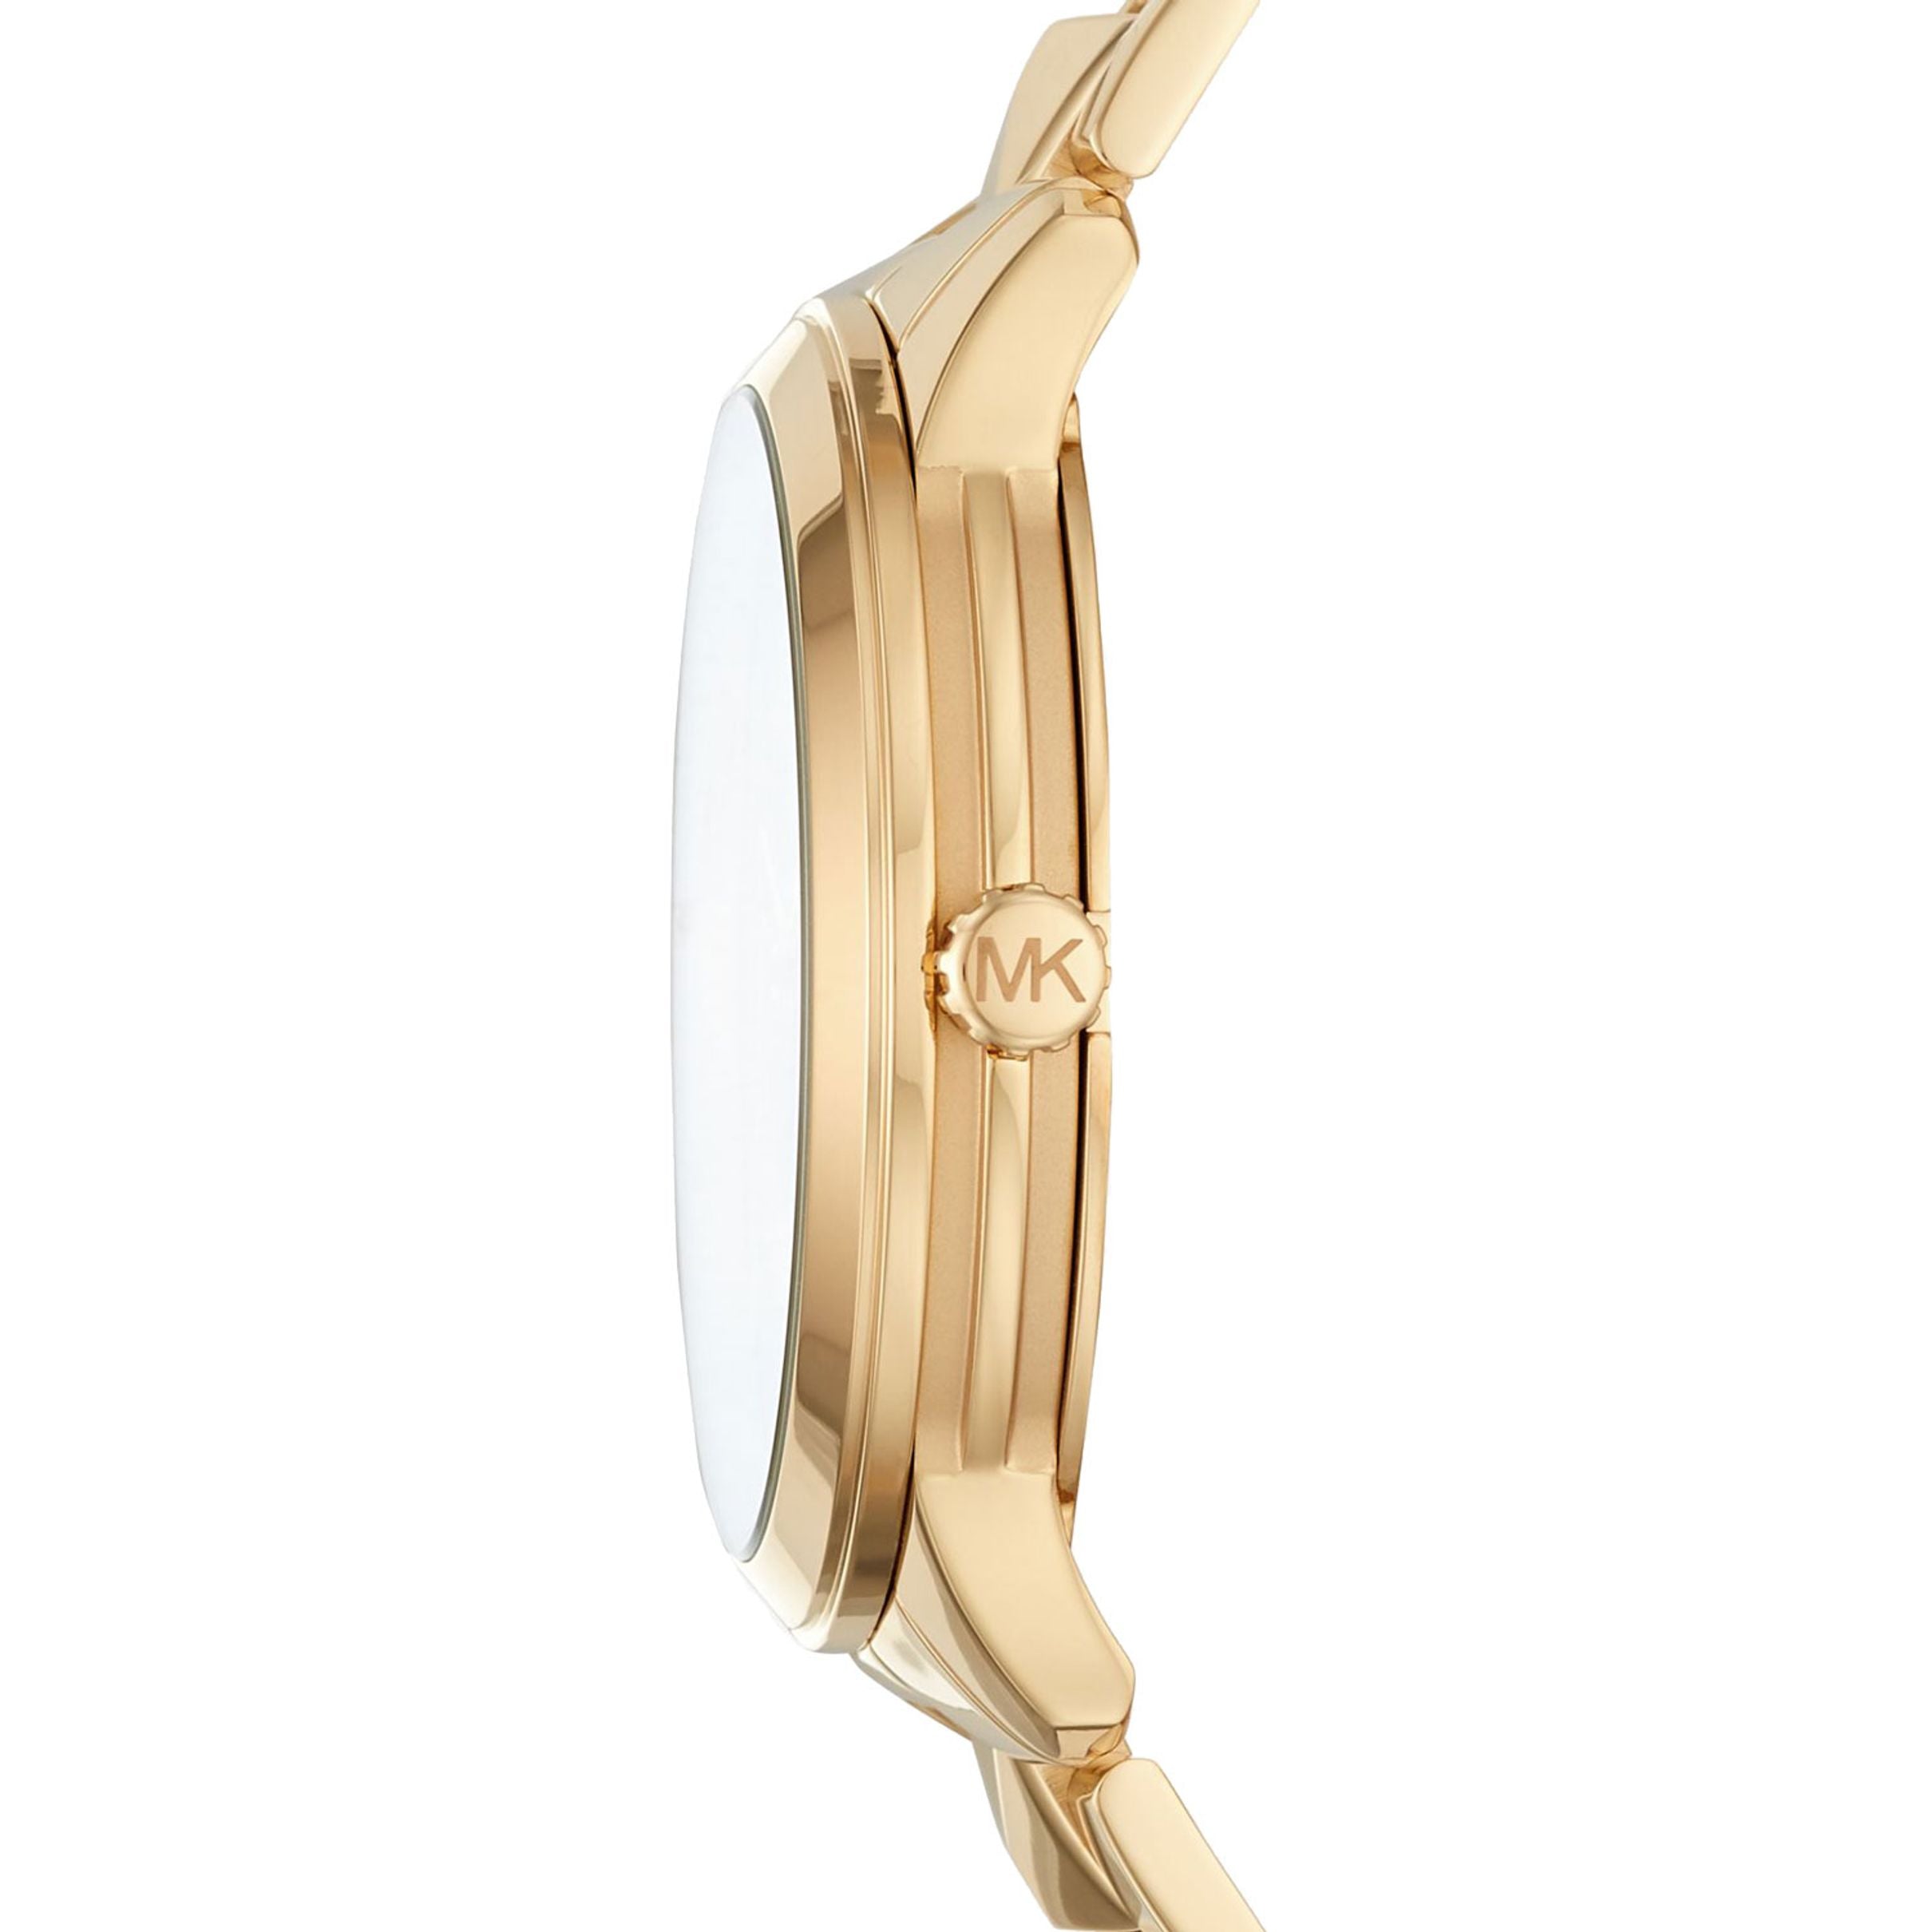 Michael Kors Women’s Quartz Stainless Steel Gold Dial 44mm Watch MK6714